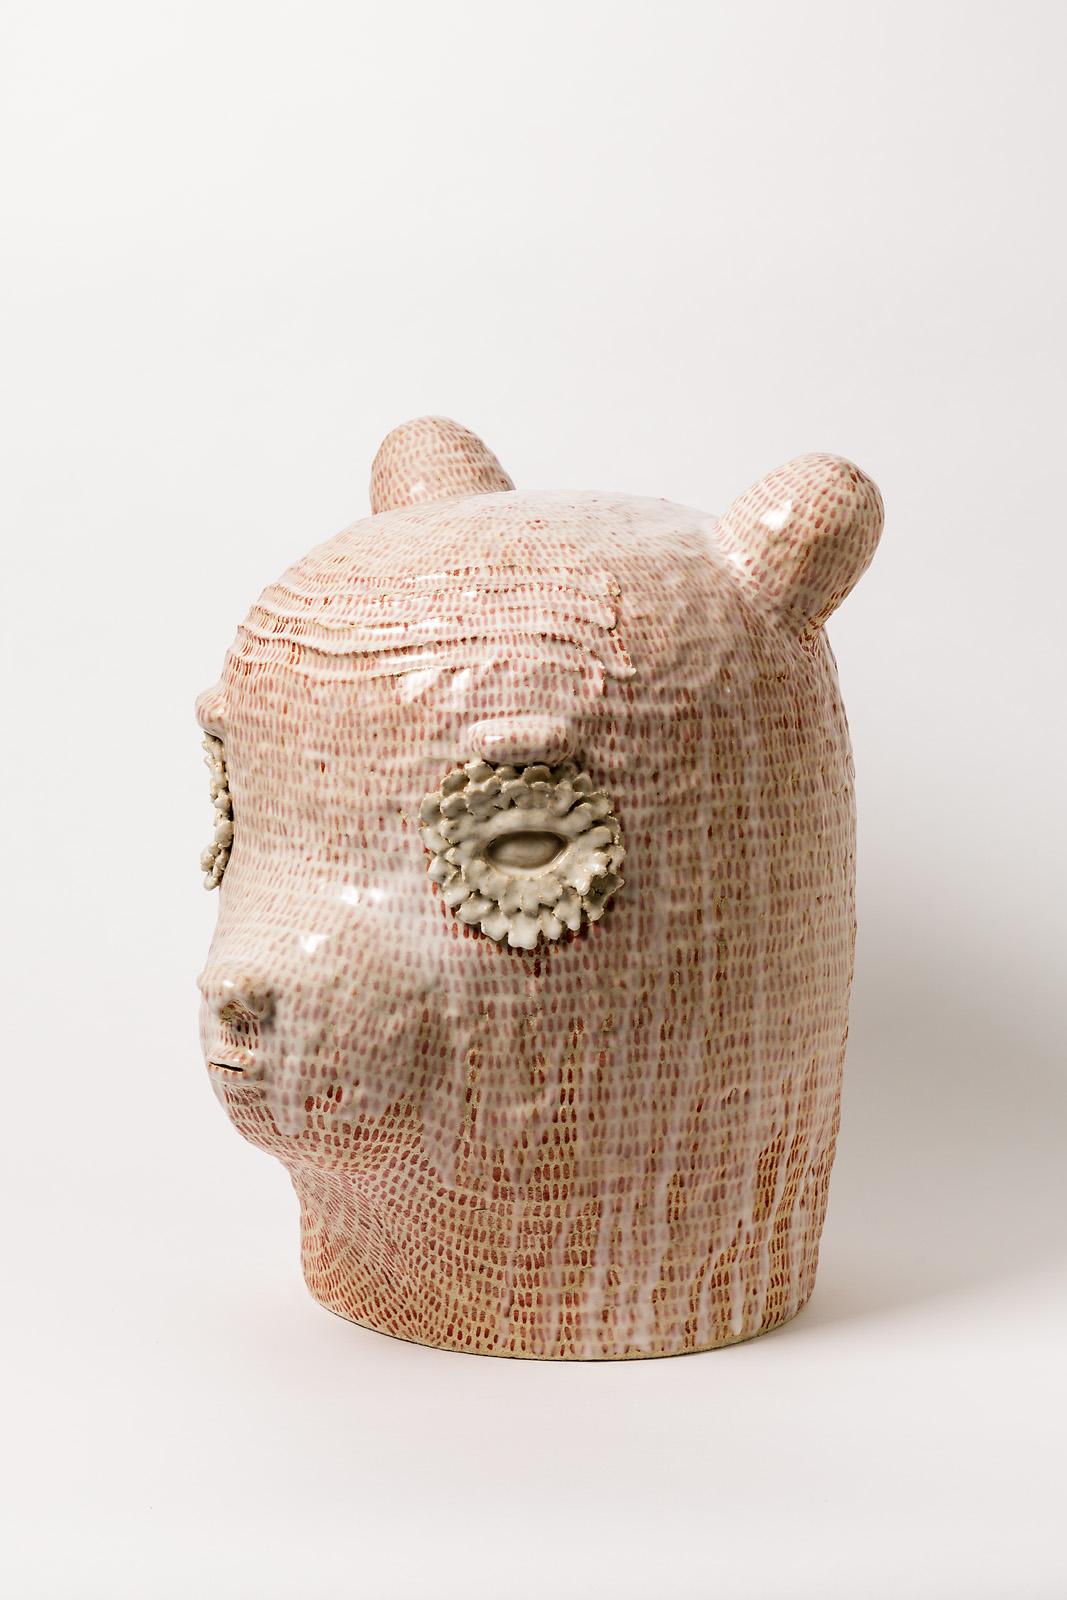 Beaux Arts Ceramic Sculpture by Laurent Dufour, 2020